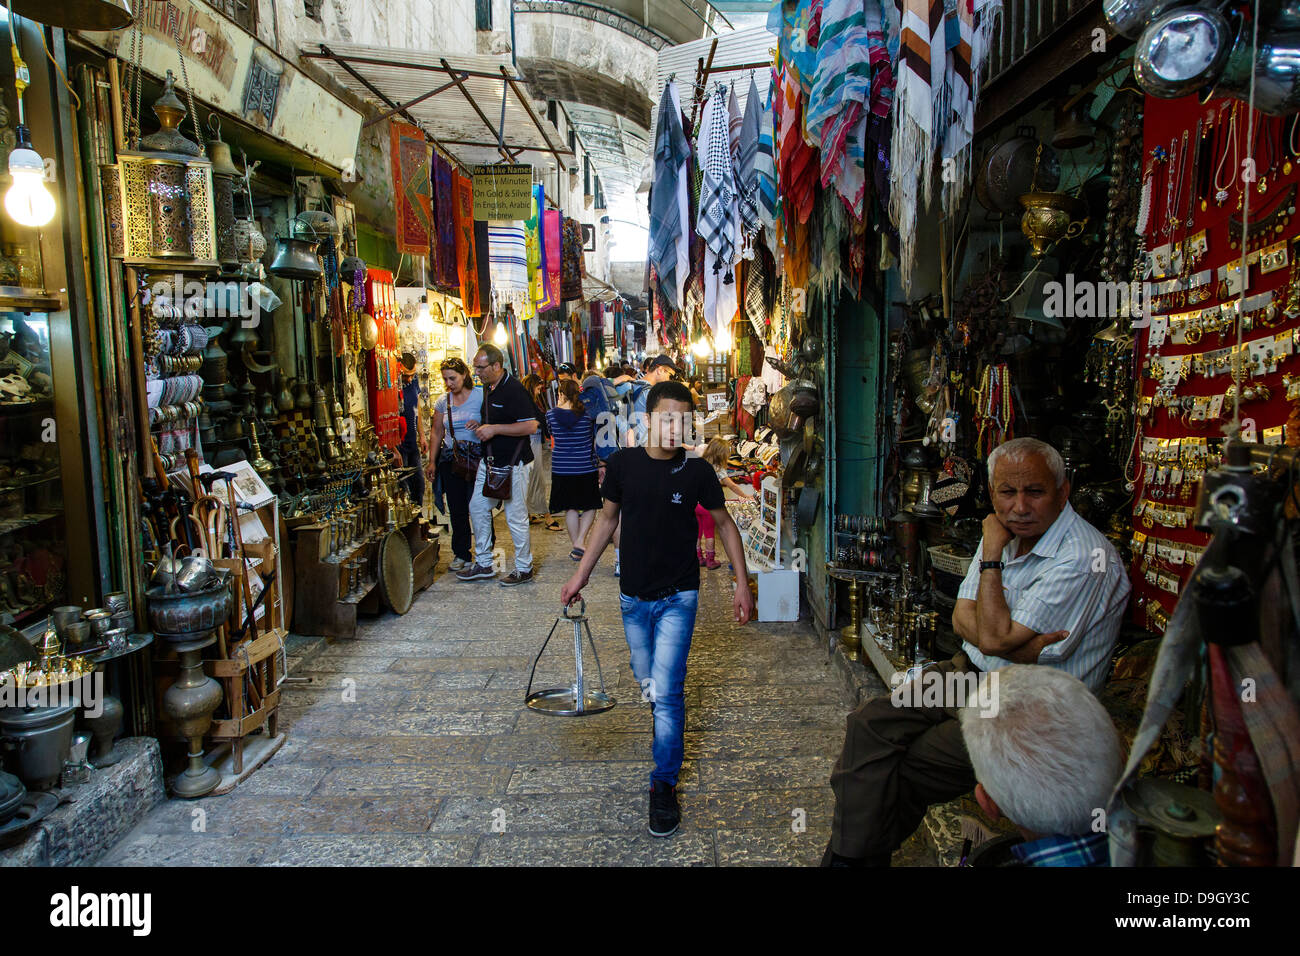 Il souk arabo, mercato coperto, al quartiere musulmano nella città vecchia di Gerusalemme, Israele. Foto Stock